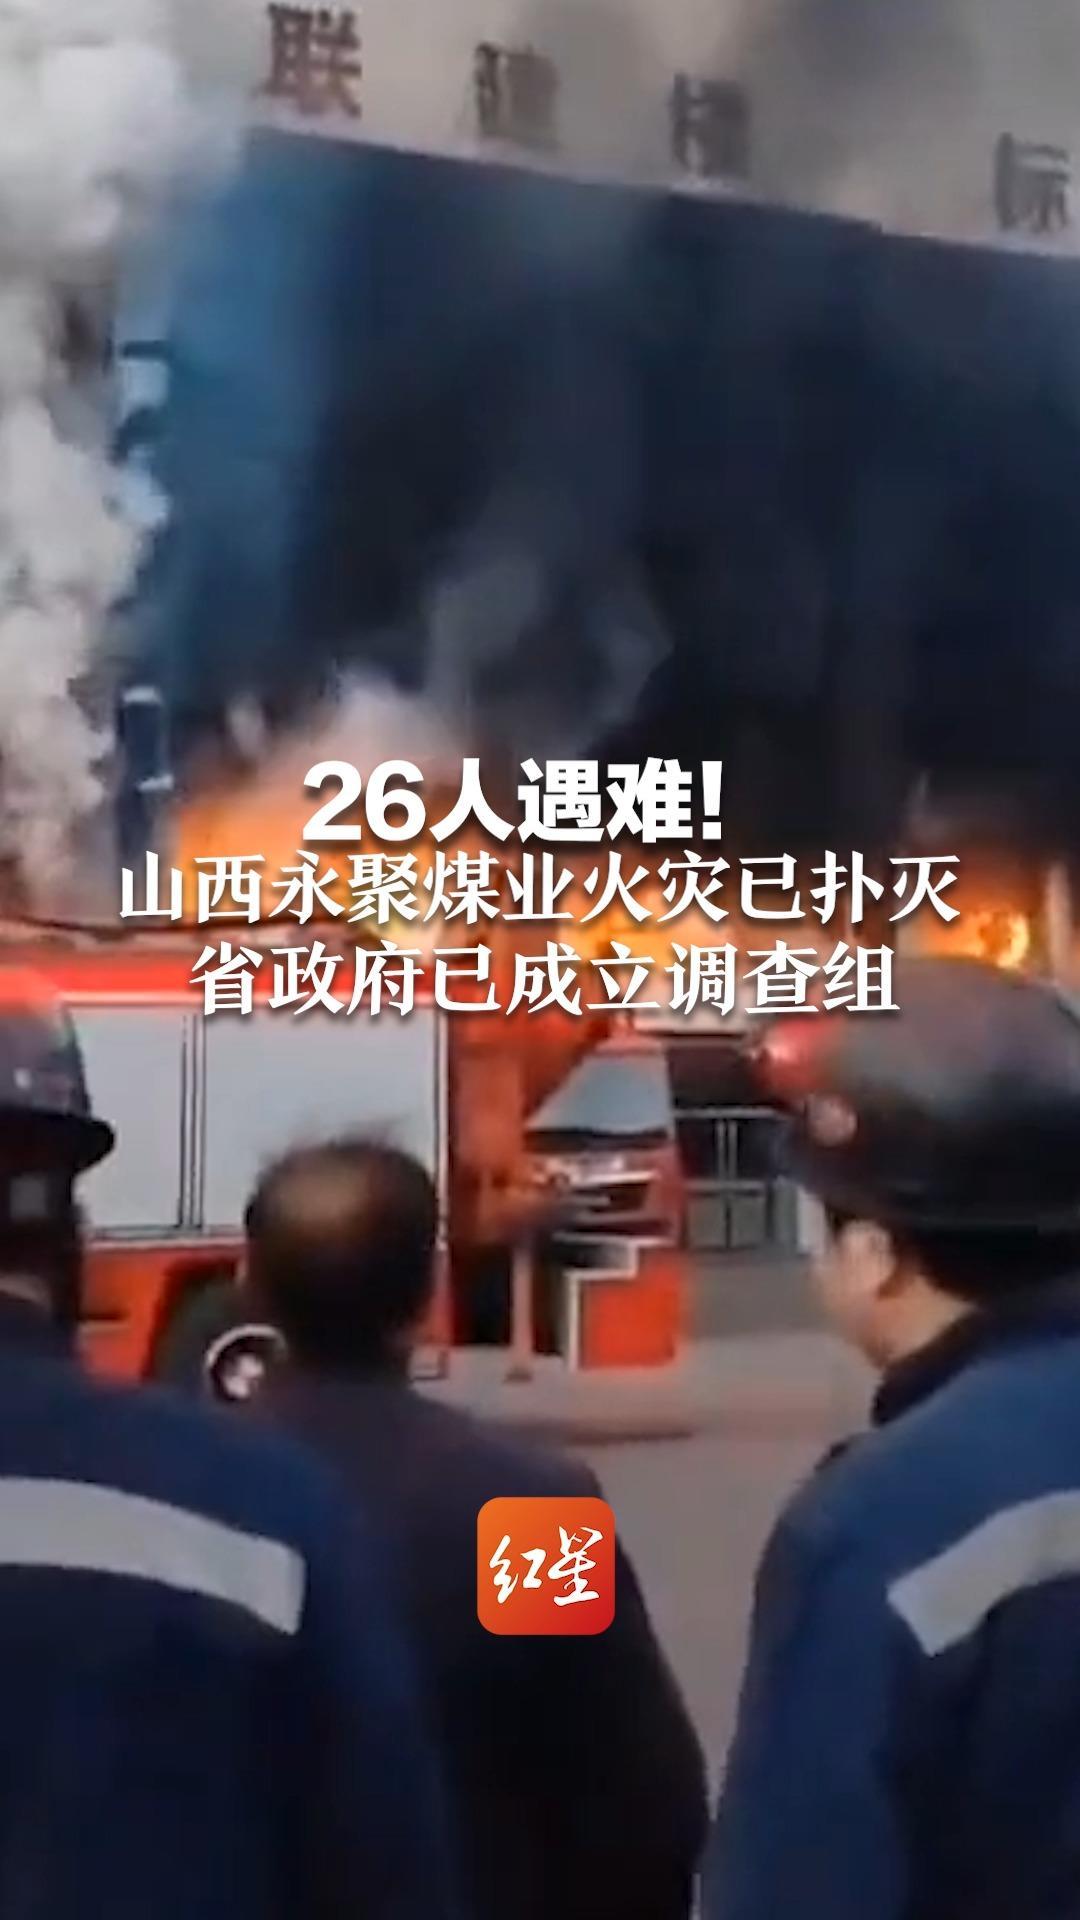 山西永聚煤业火灾致26人遇难，火势已扑灭，当地街道办回应